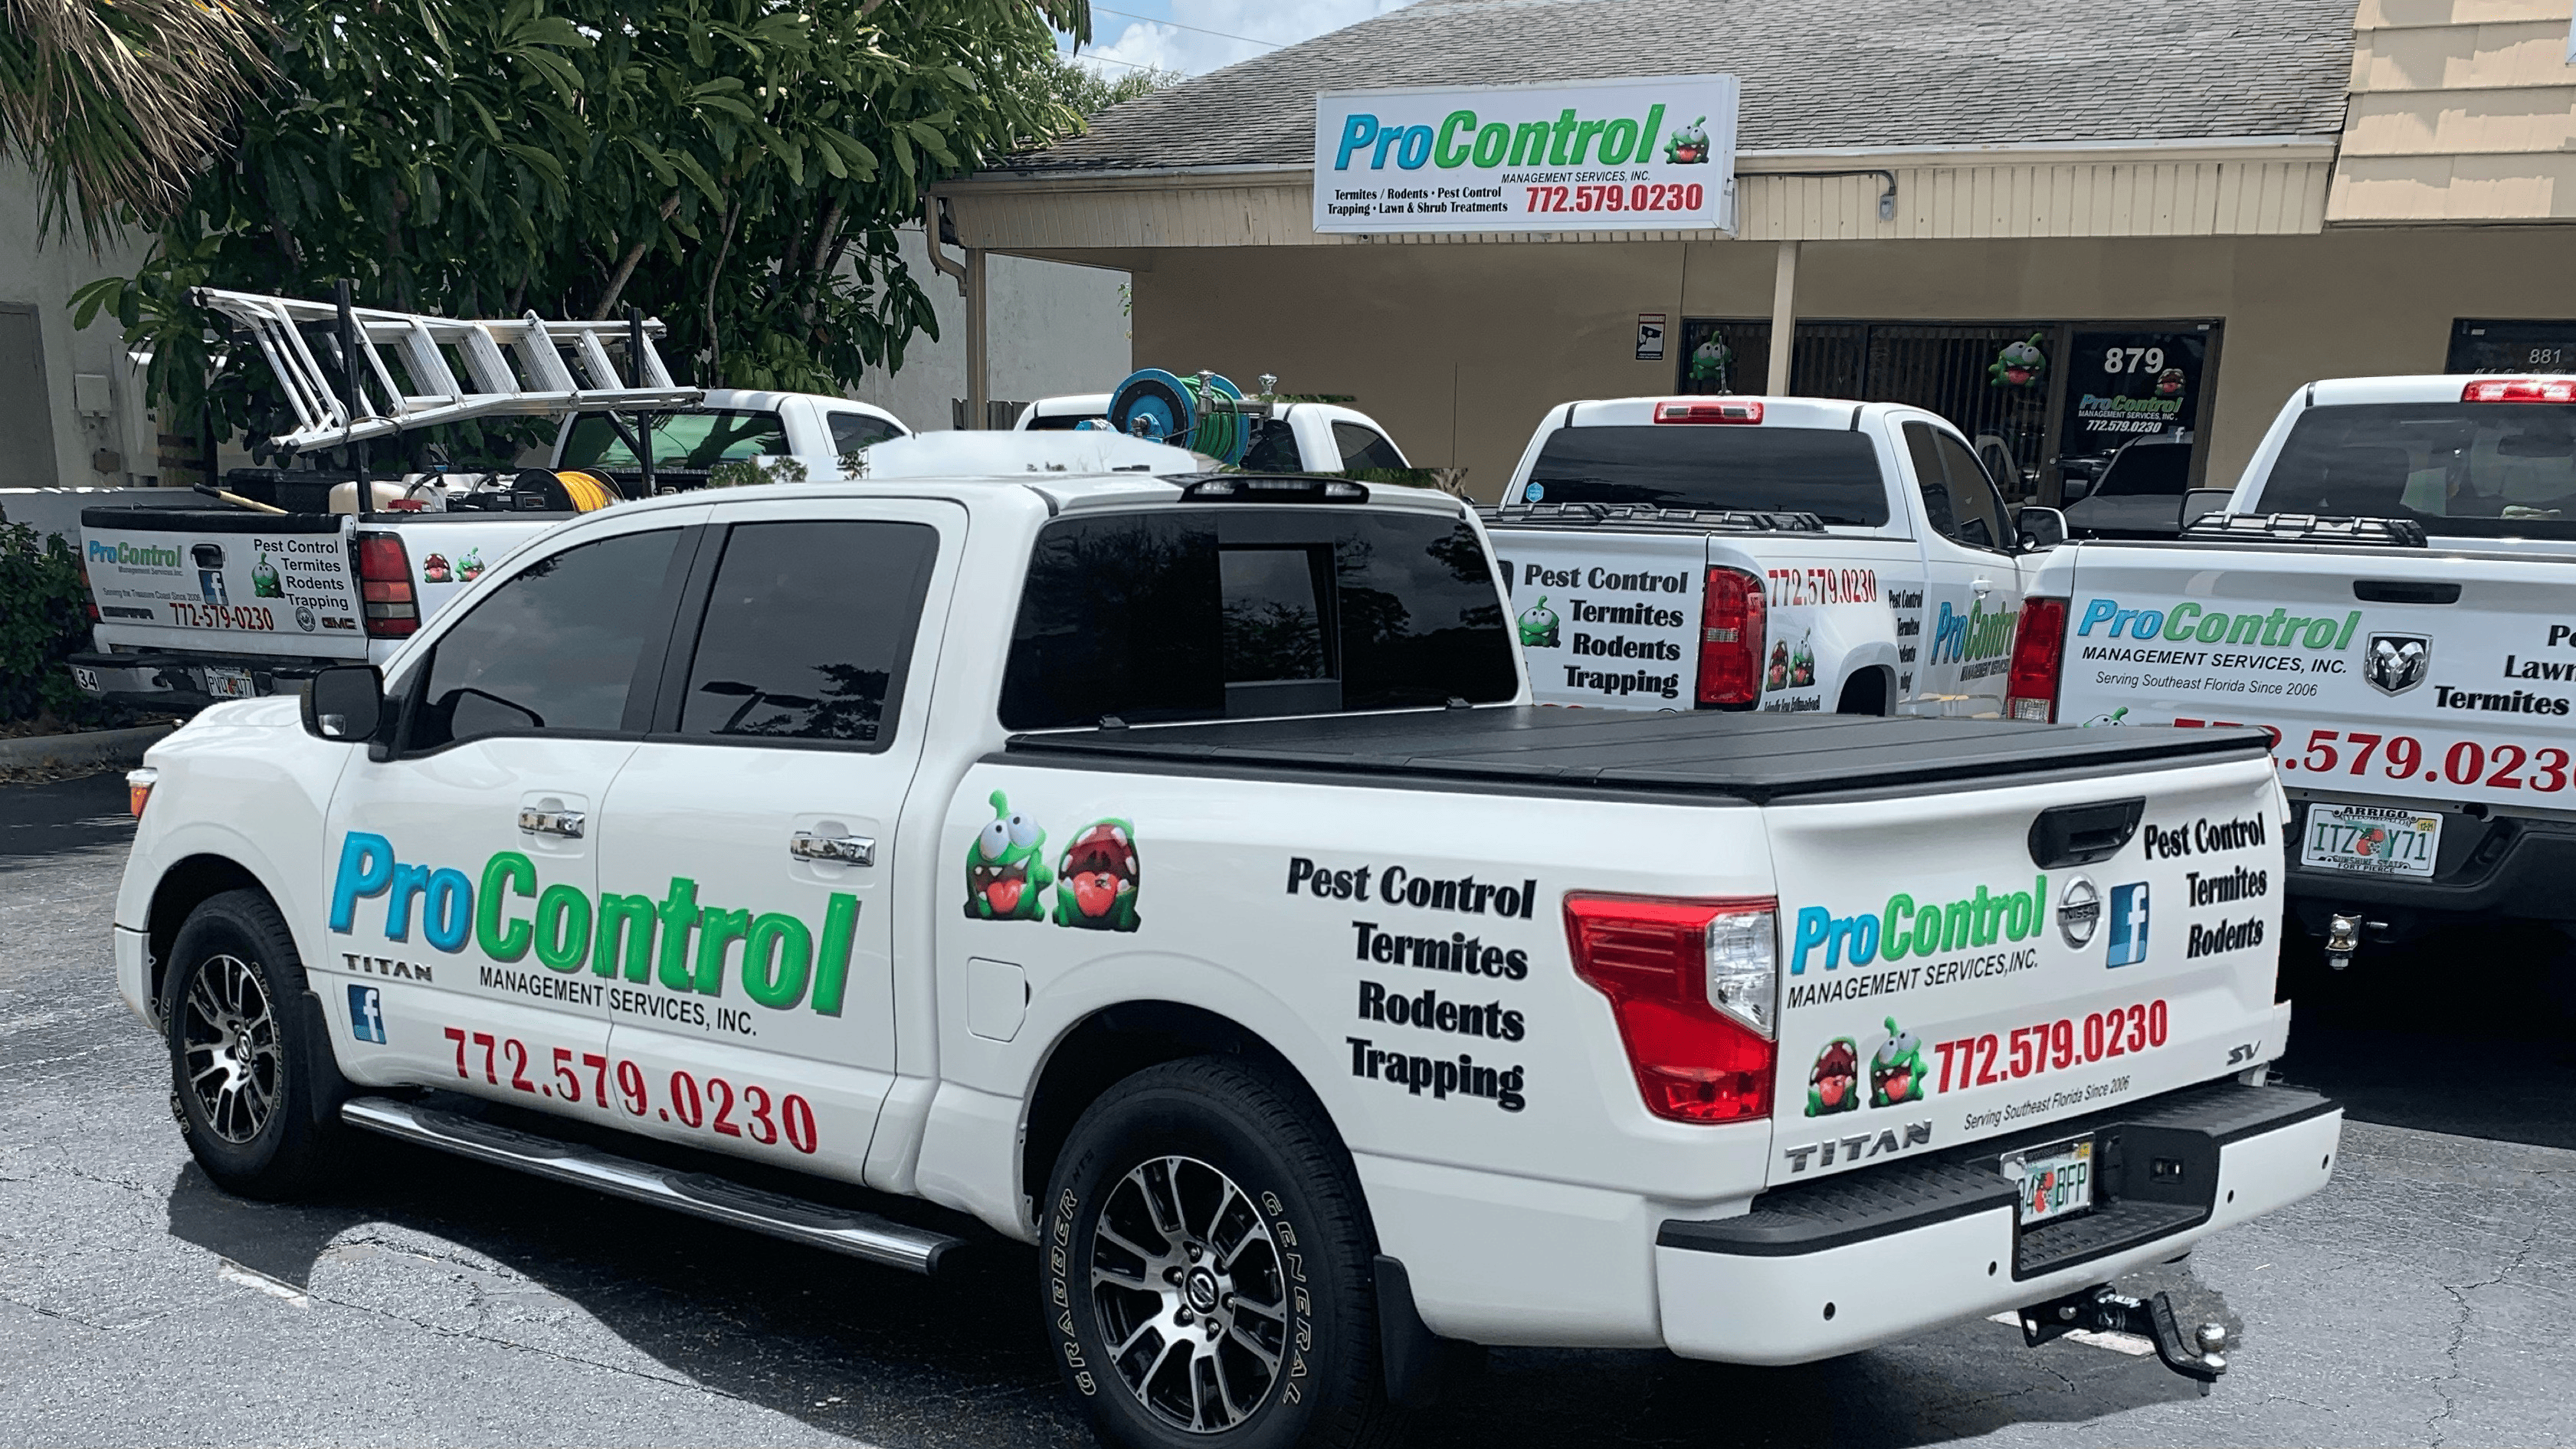 ProControl Management Services - Port St. Lucie, FL, US, pest control companies near me